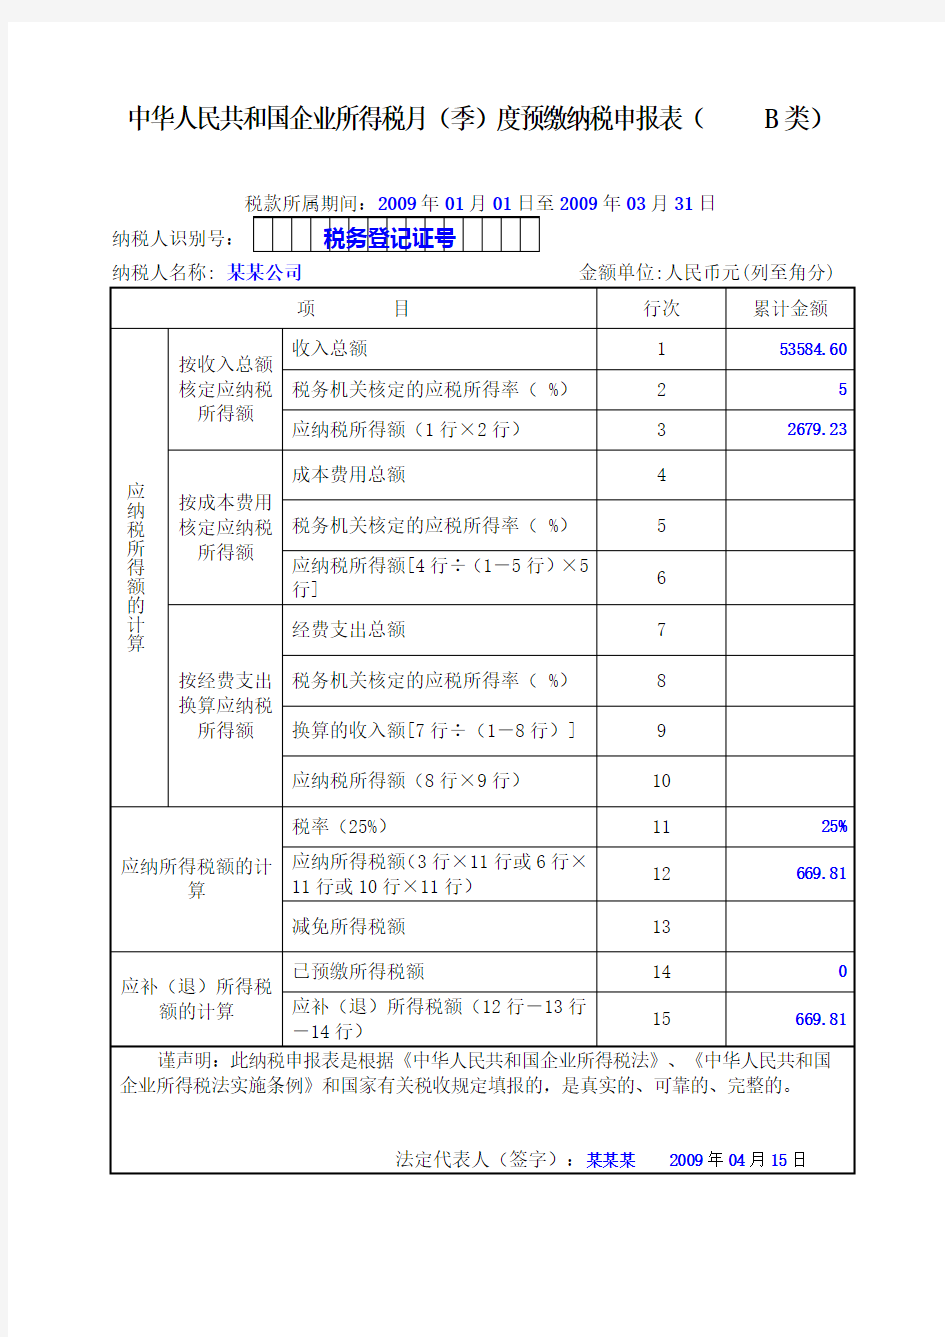 中华人民共和国企业所得税月季度预缴纳税申报表B类